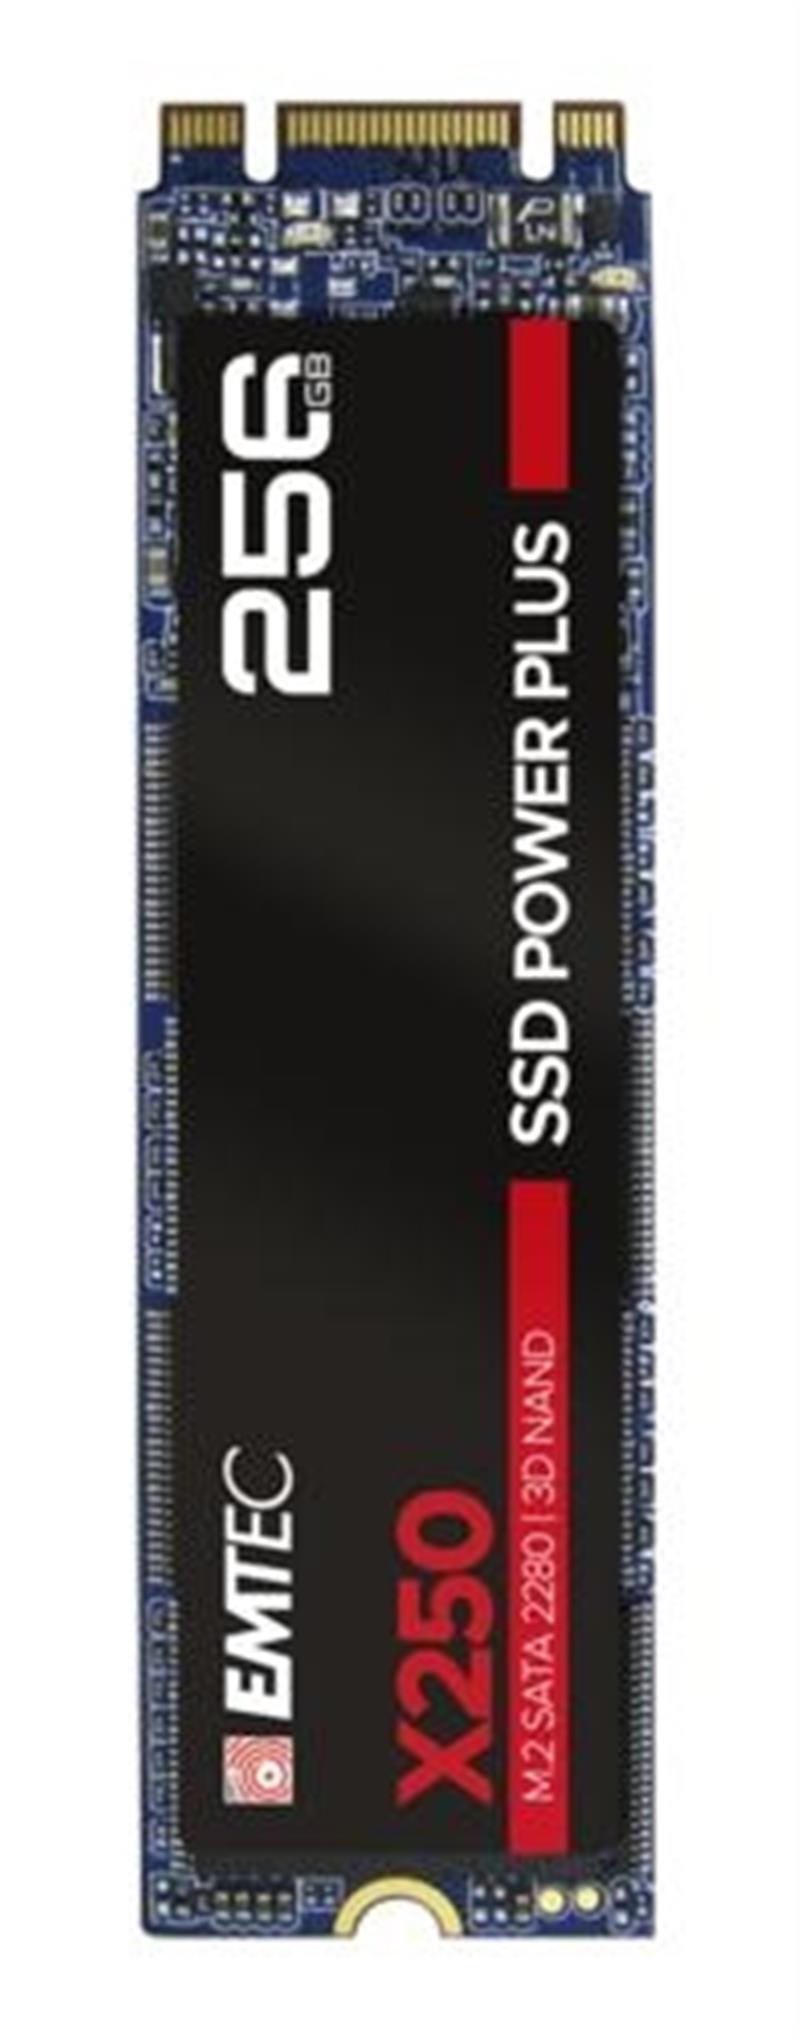 Emtec X250 M.2 256 GB SATA III 3D NAND